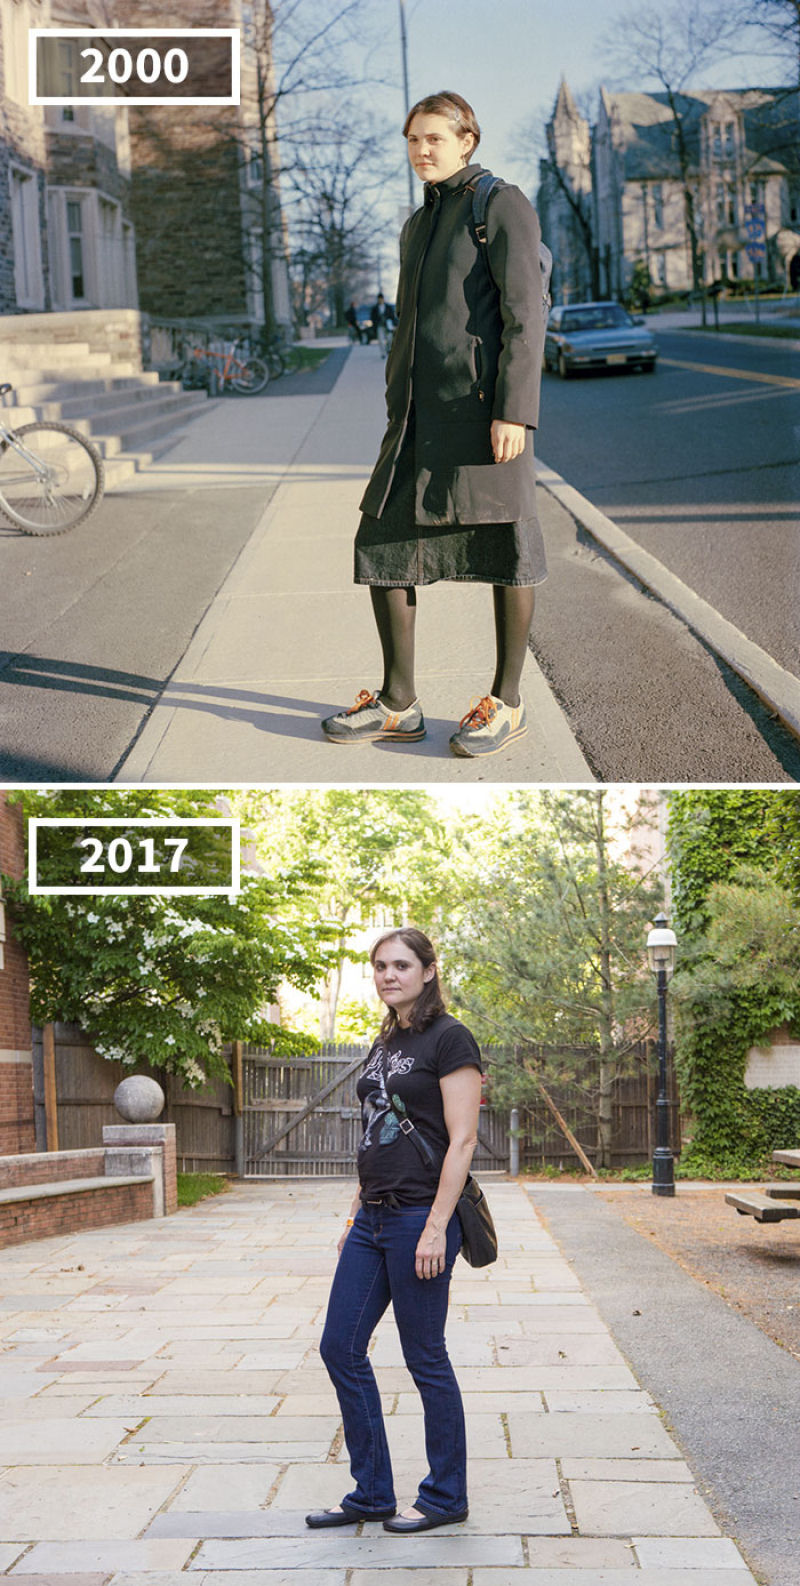 17 anos separam as fotos de antes e depois dos amigos desta fotgrafa 19